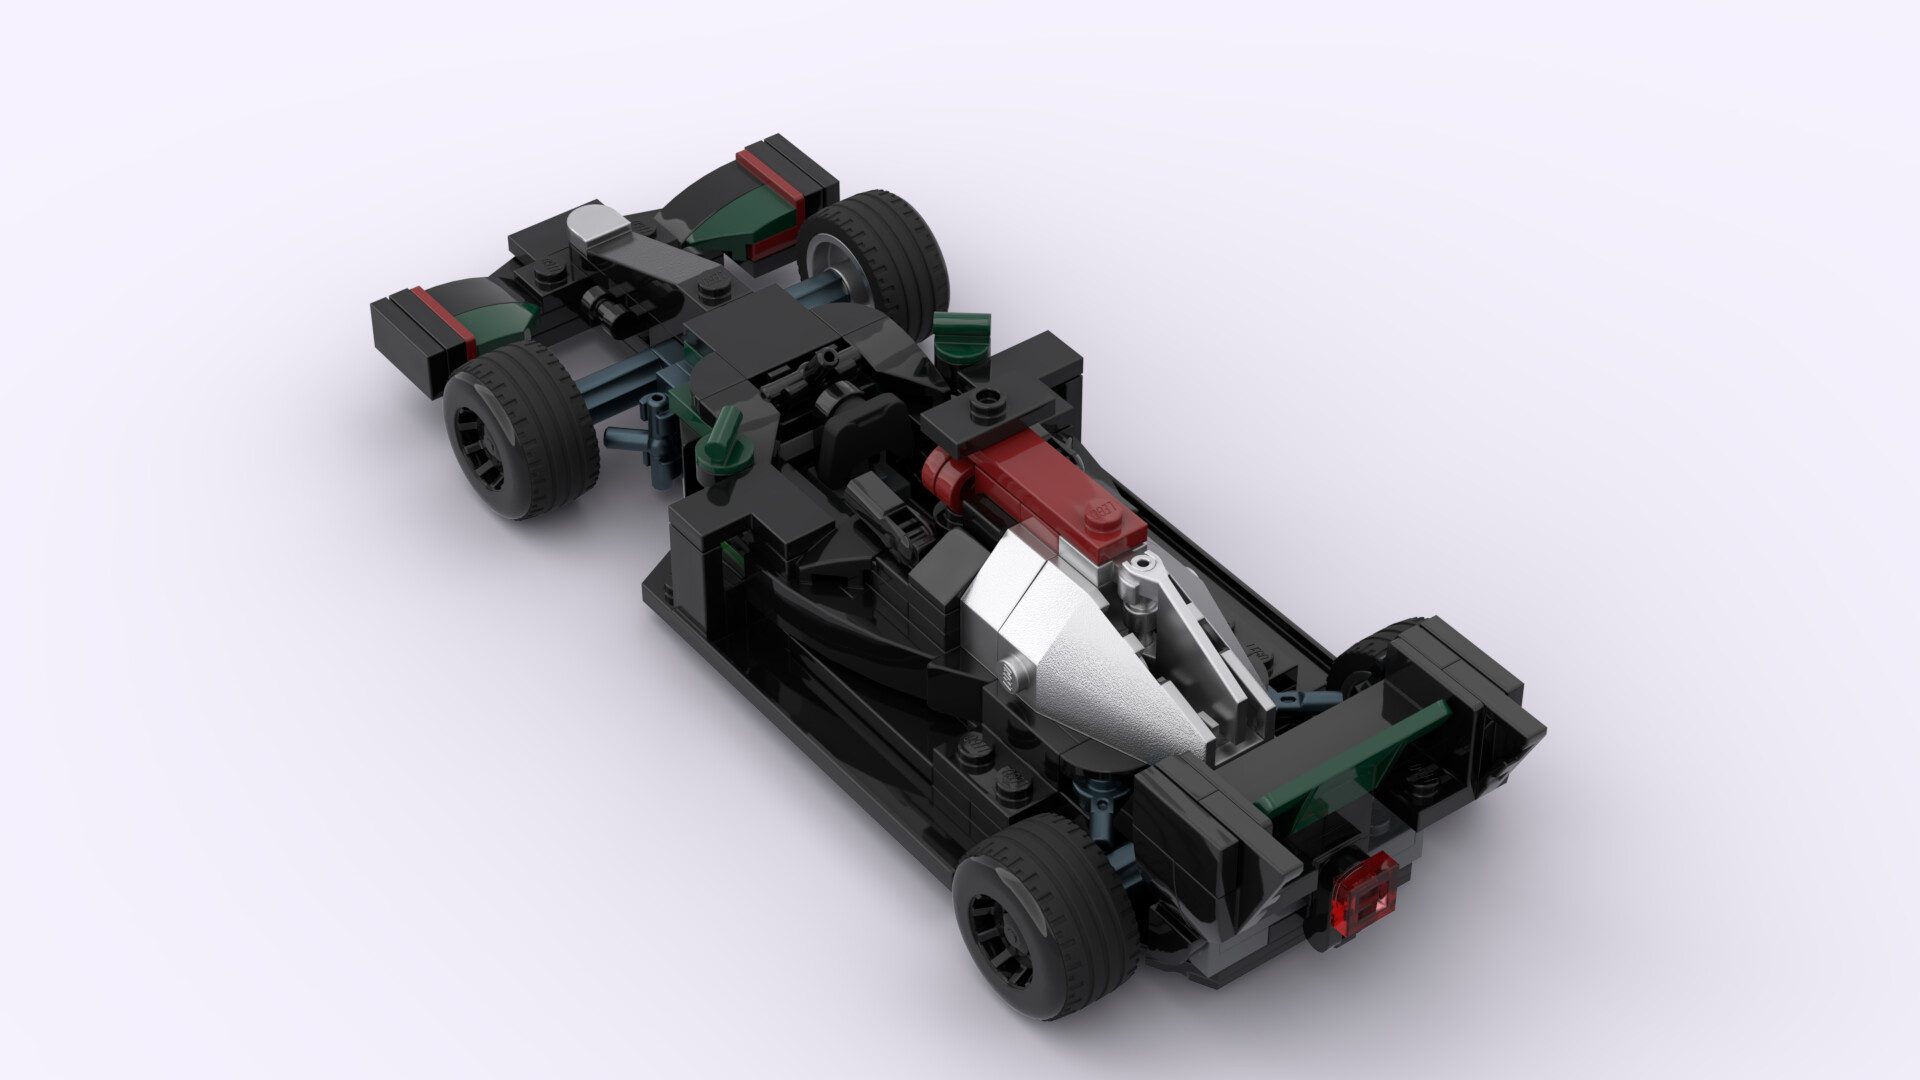 File:Lego Mercedes F1 Car.jpg - Wikimedia Commons